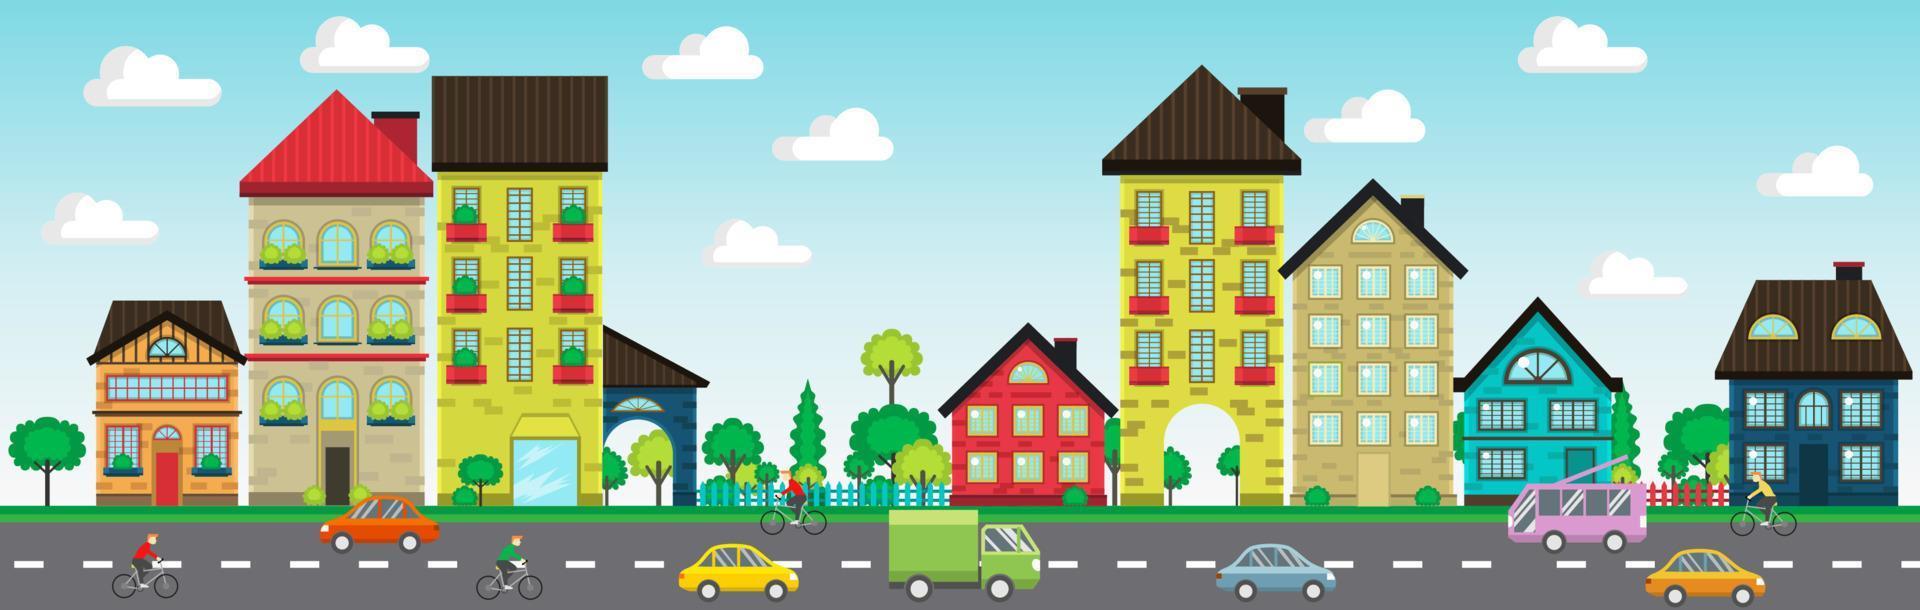 colorida casas em a rua com carros e ciclista vetor ilustração